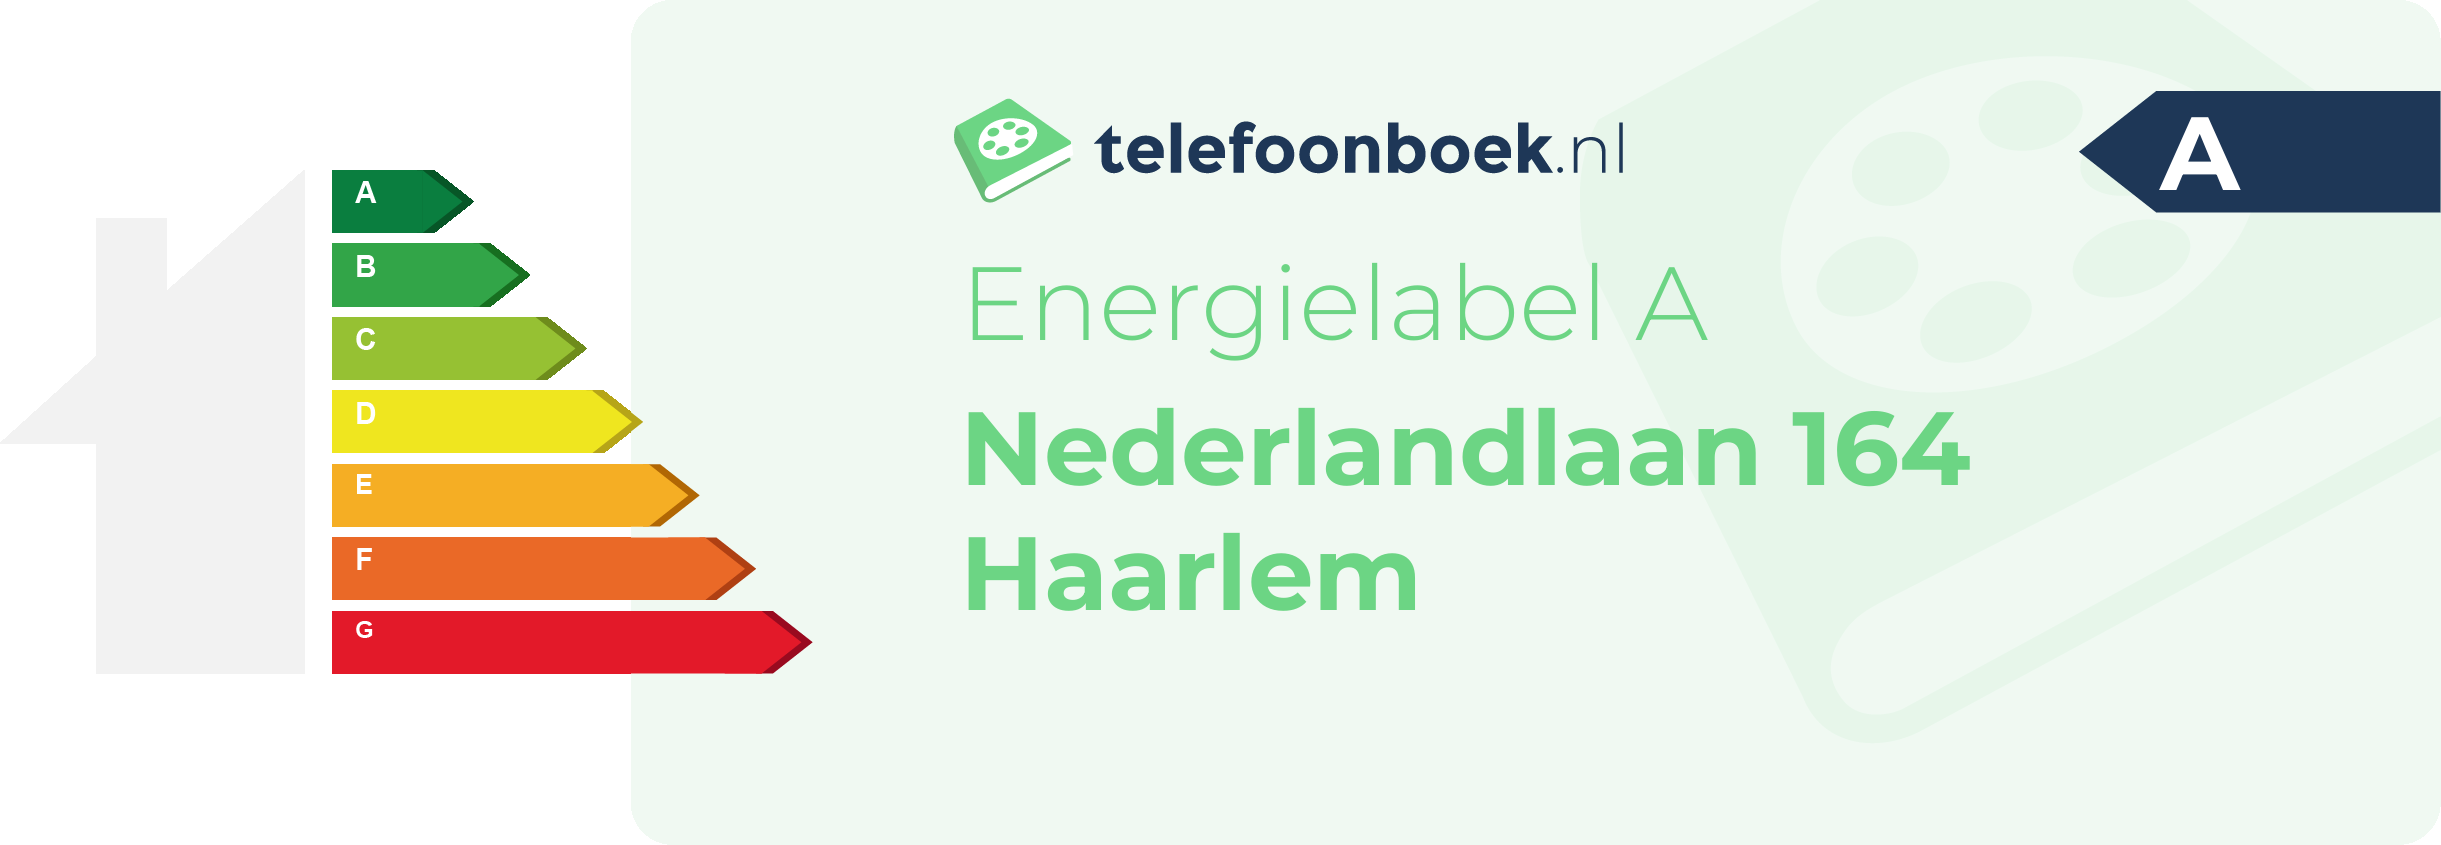 Energielabel Nederlandlaan 164 Haarlem